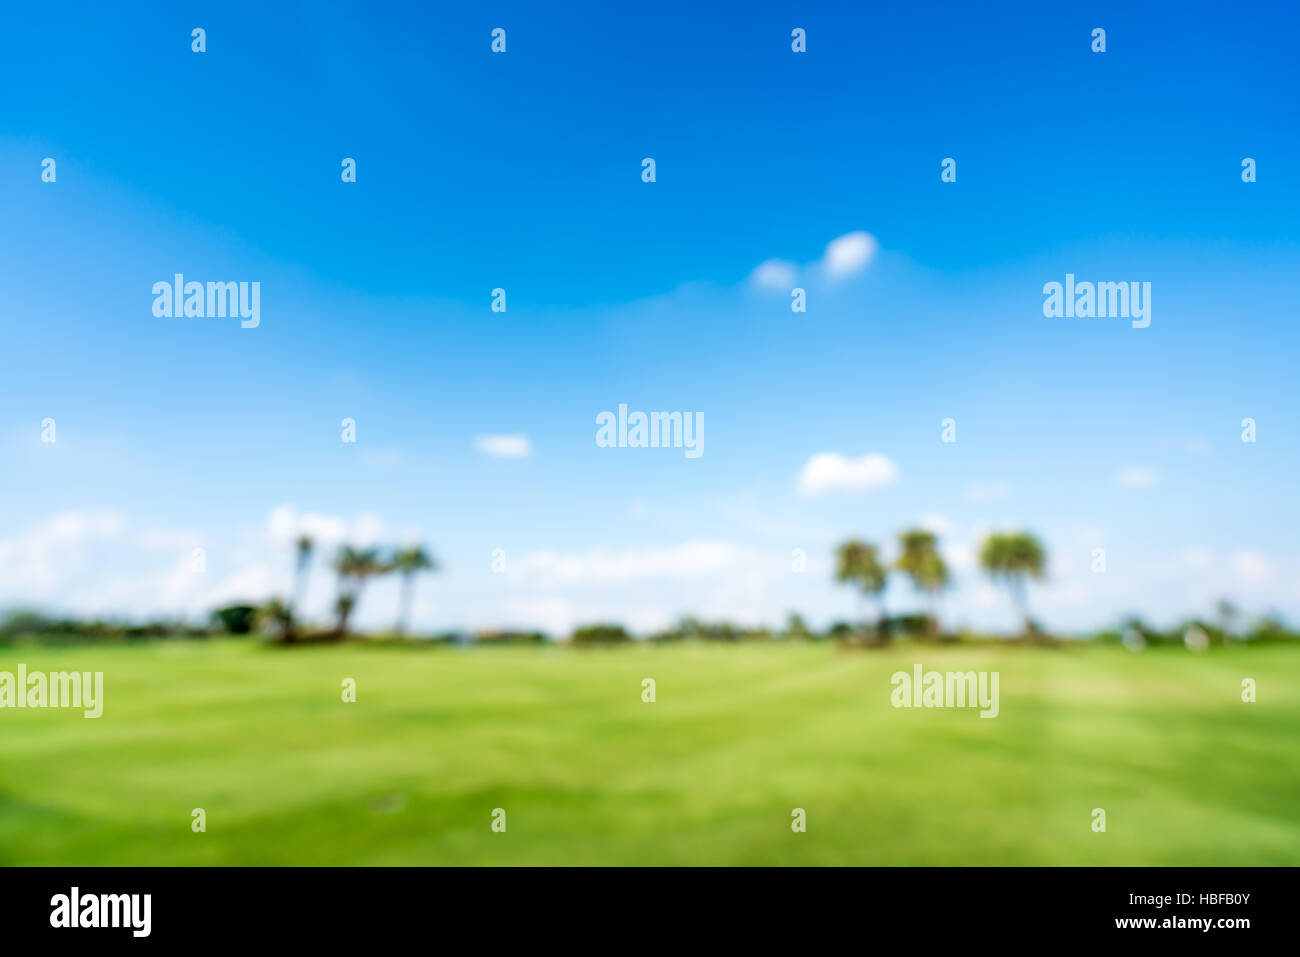 El campo de golf o campo verde fondo desenfocado, copie el espacio sobre el cielo azul, el deporte o concepto de naturaleza Foto de stock